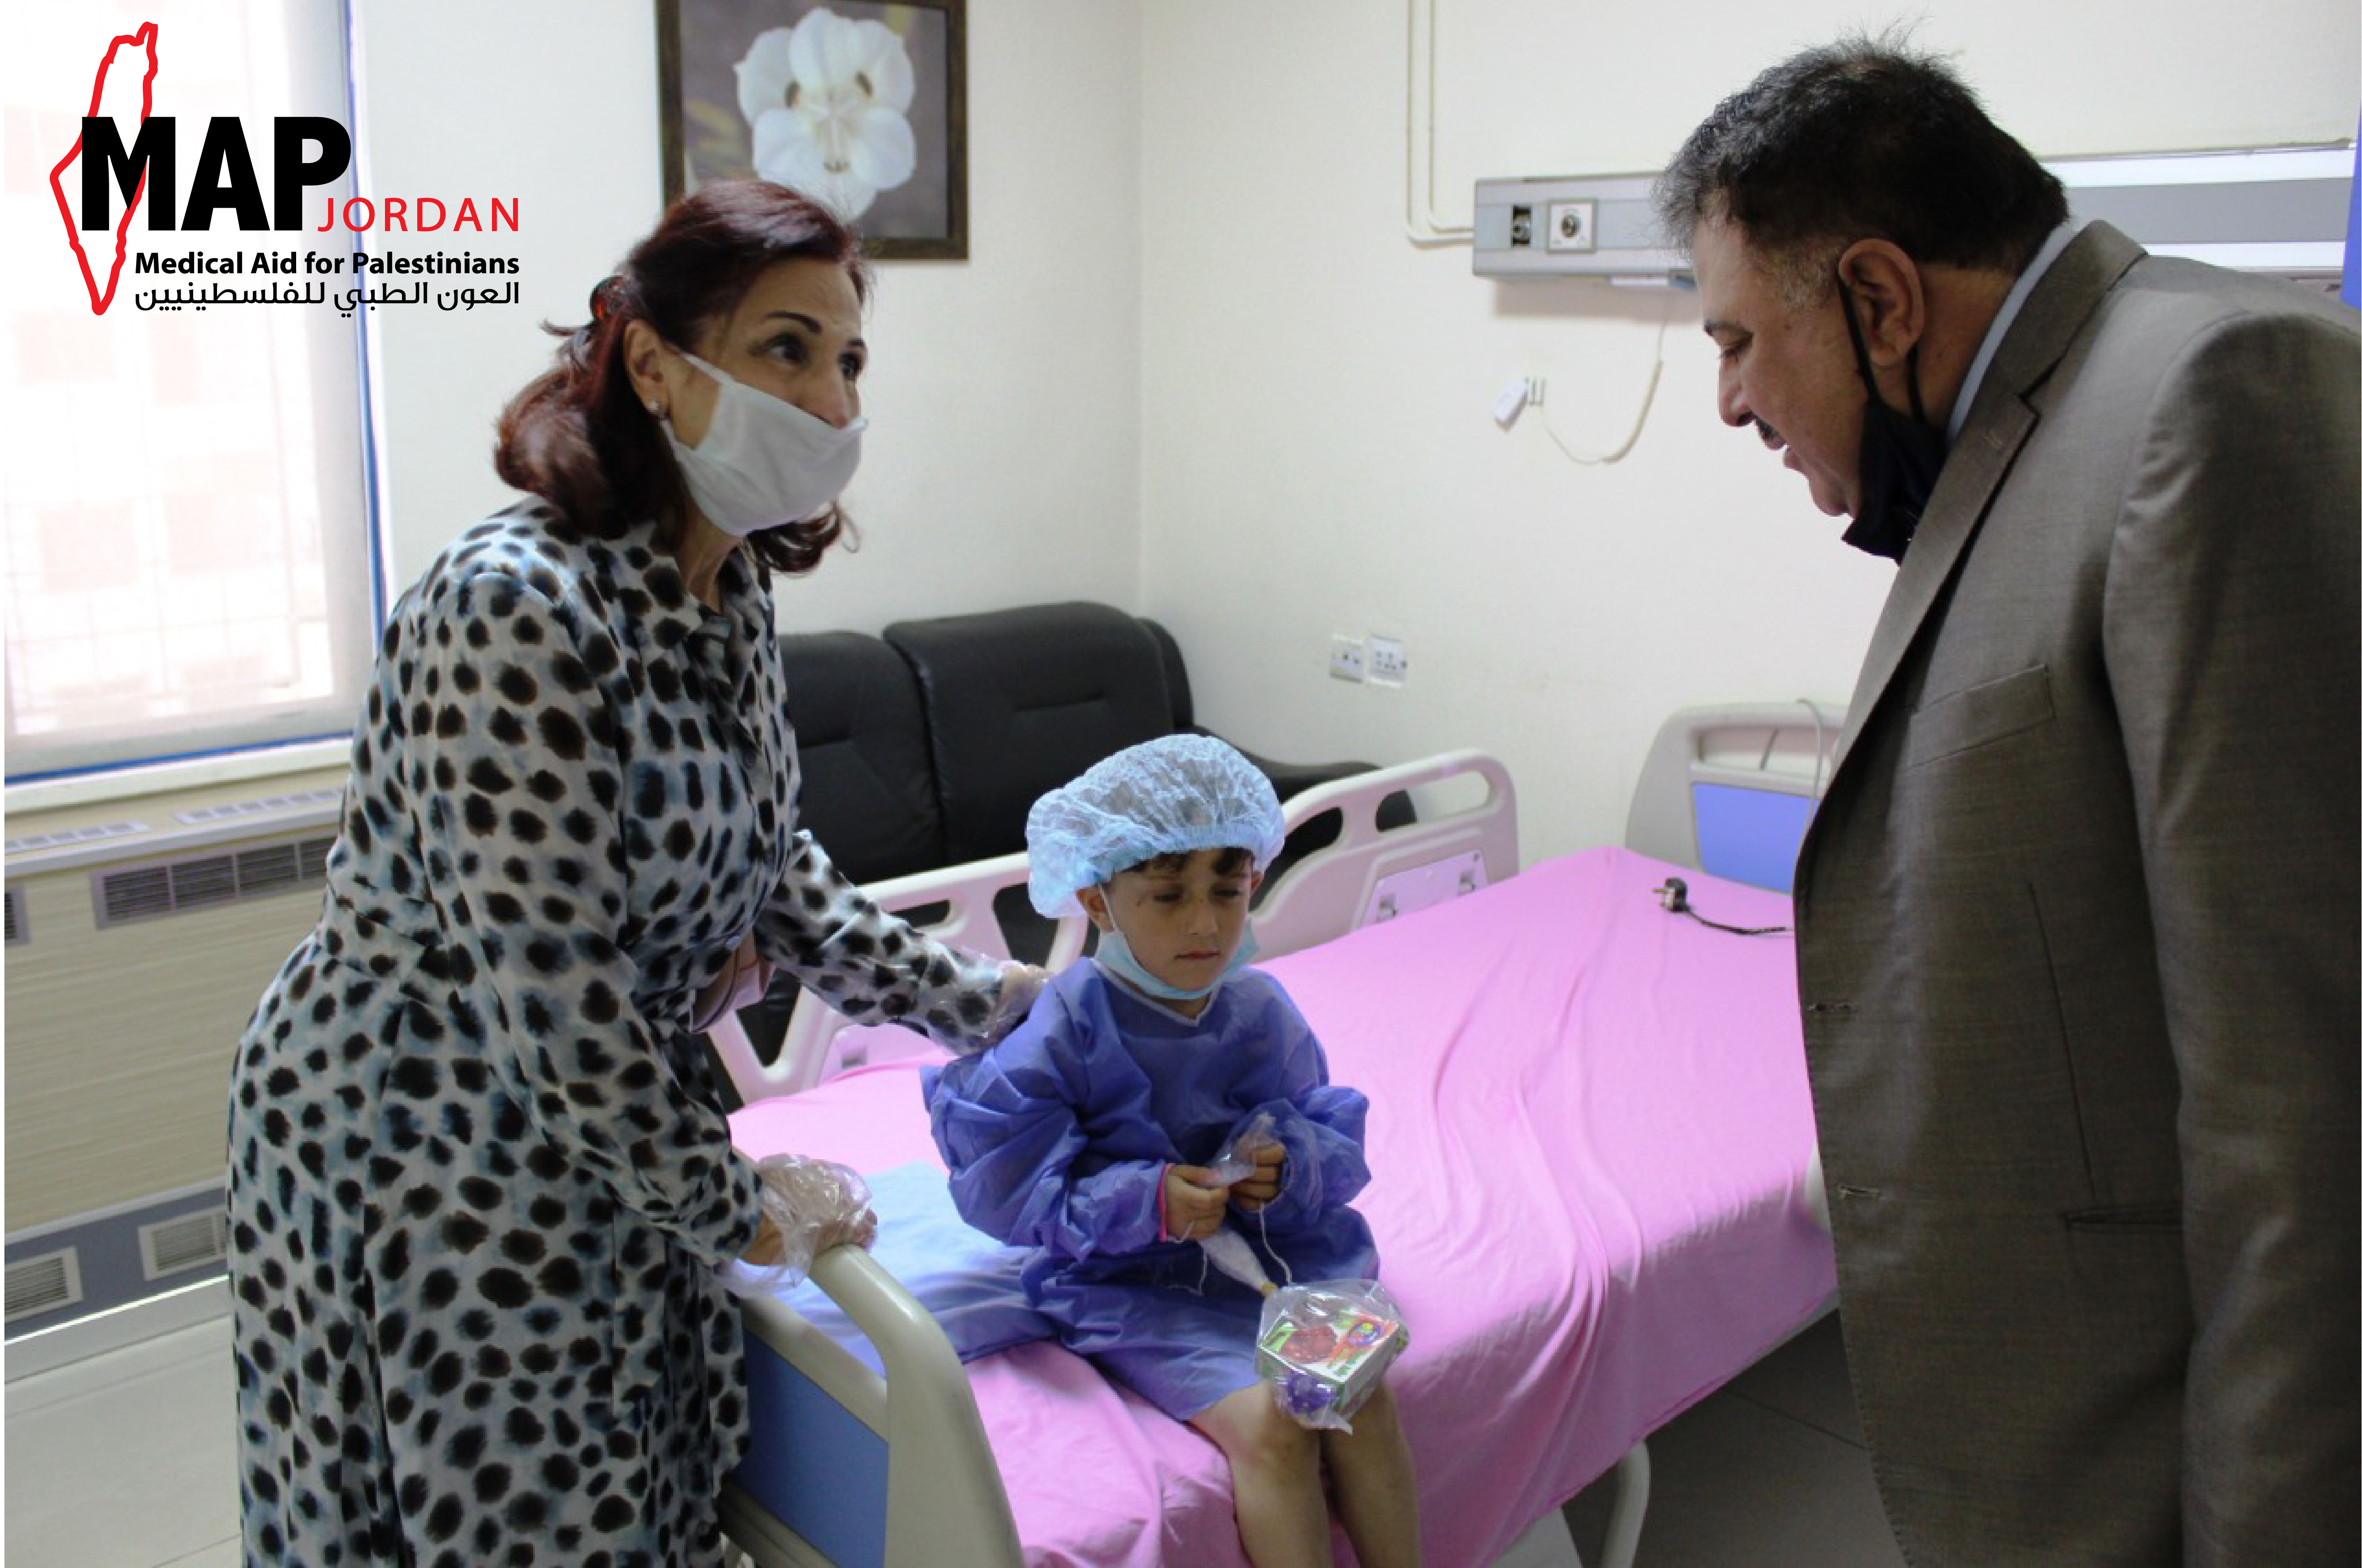 الجمعية الأردنية للعون الطبي للفلسطينيين MAP وقطر الخيرية تنفذان مشروع عمليات للاطفال في اليوم العالمي للاجئ